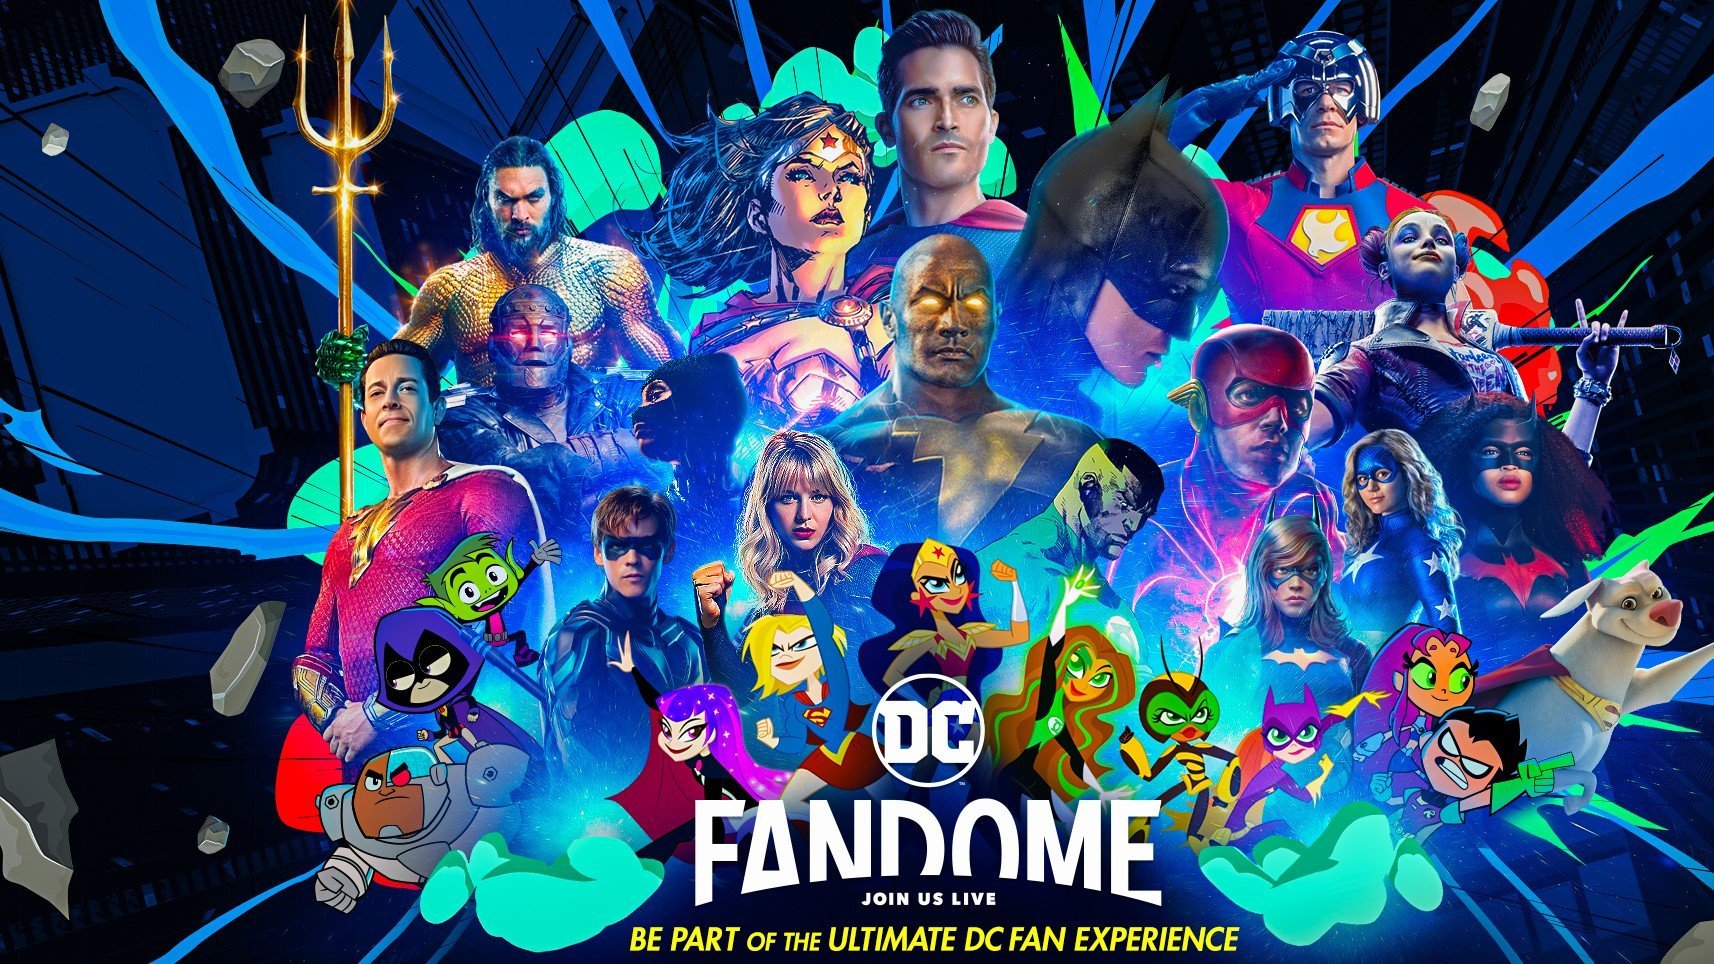 As maiores novidades do DC FanDome